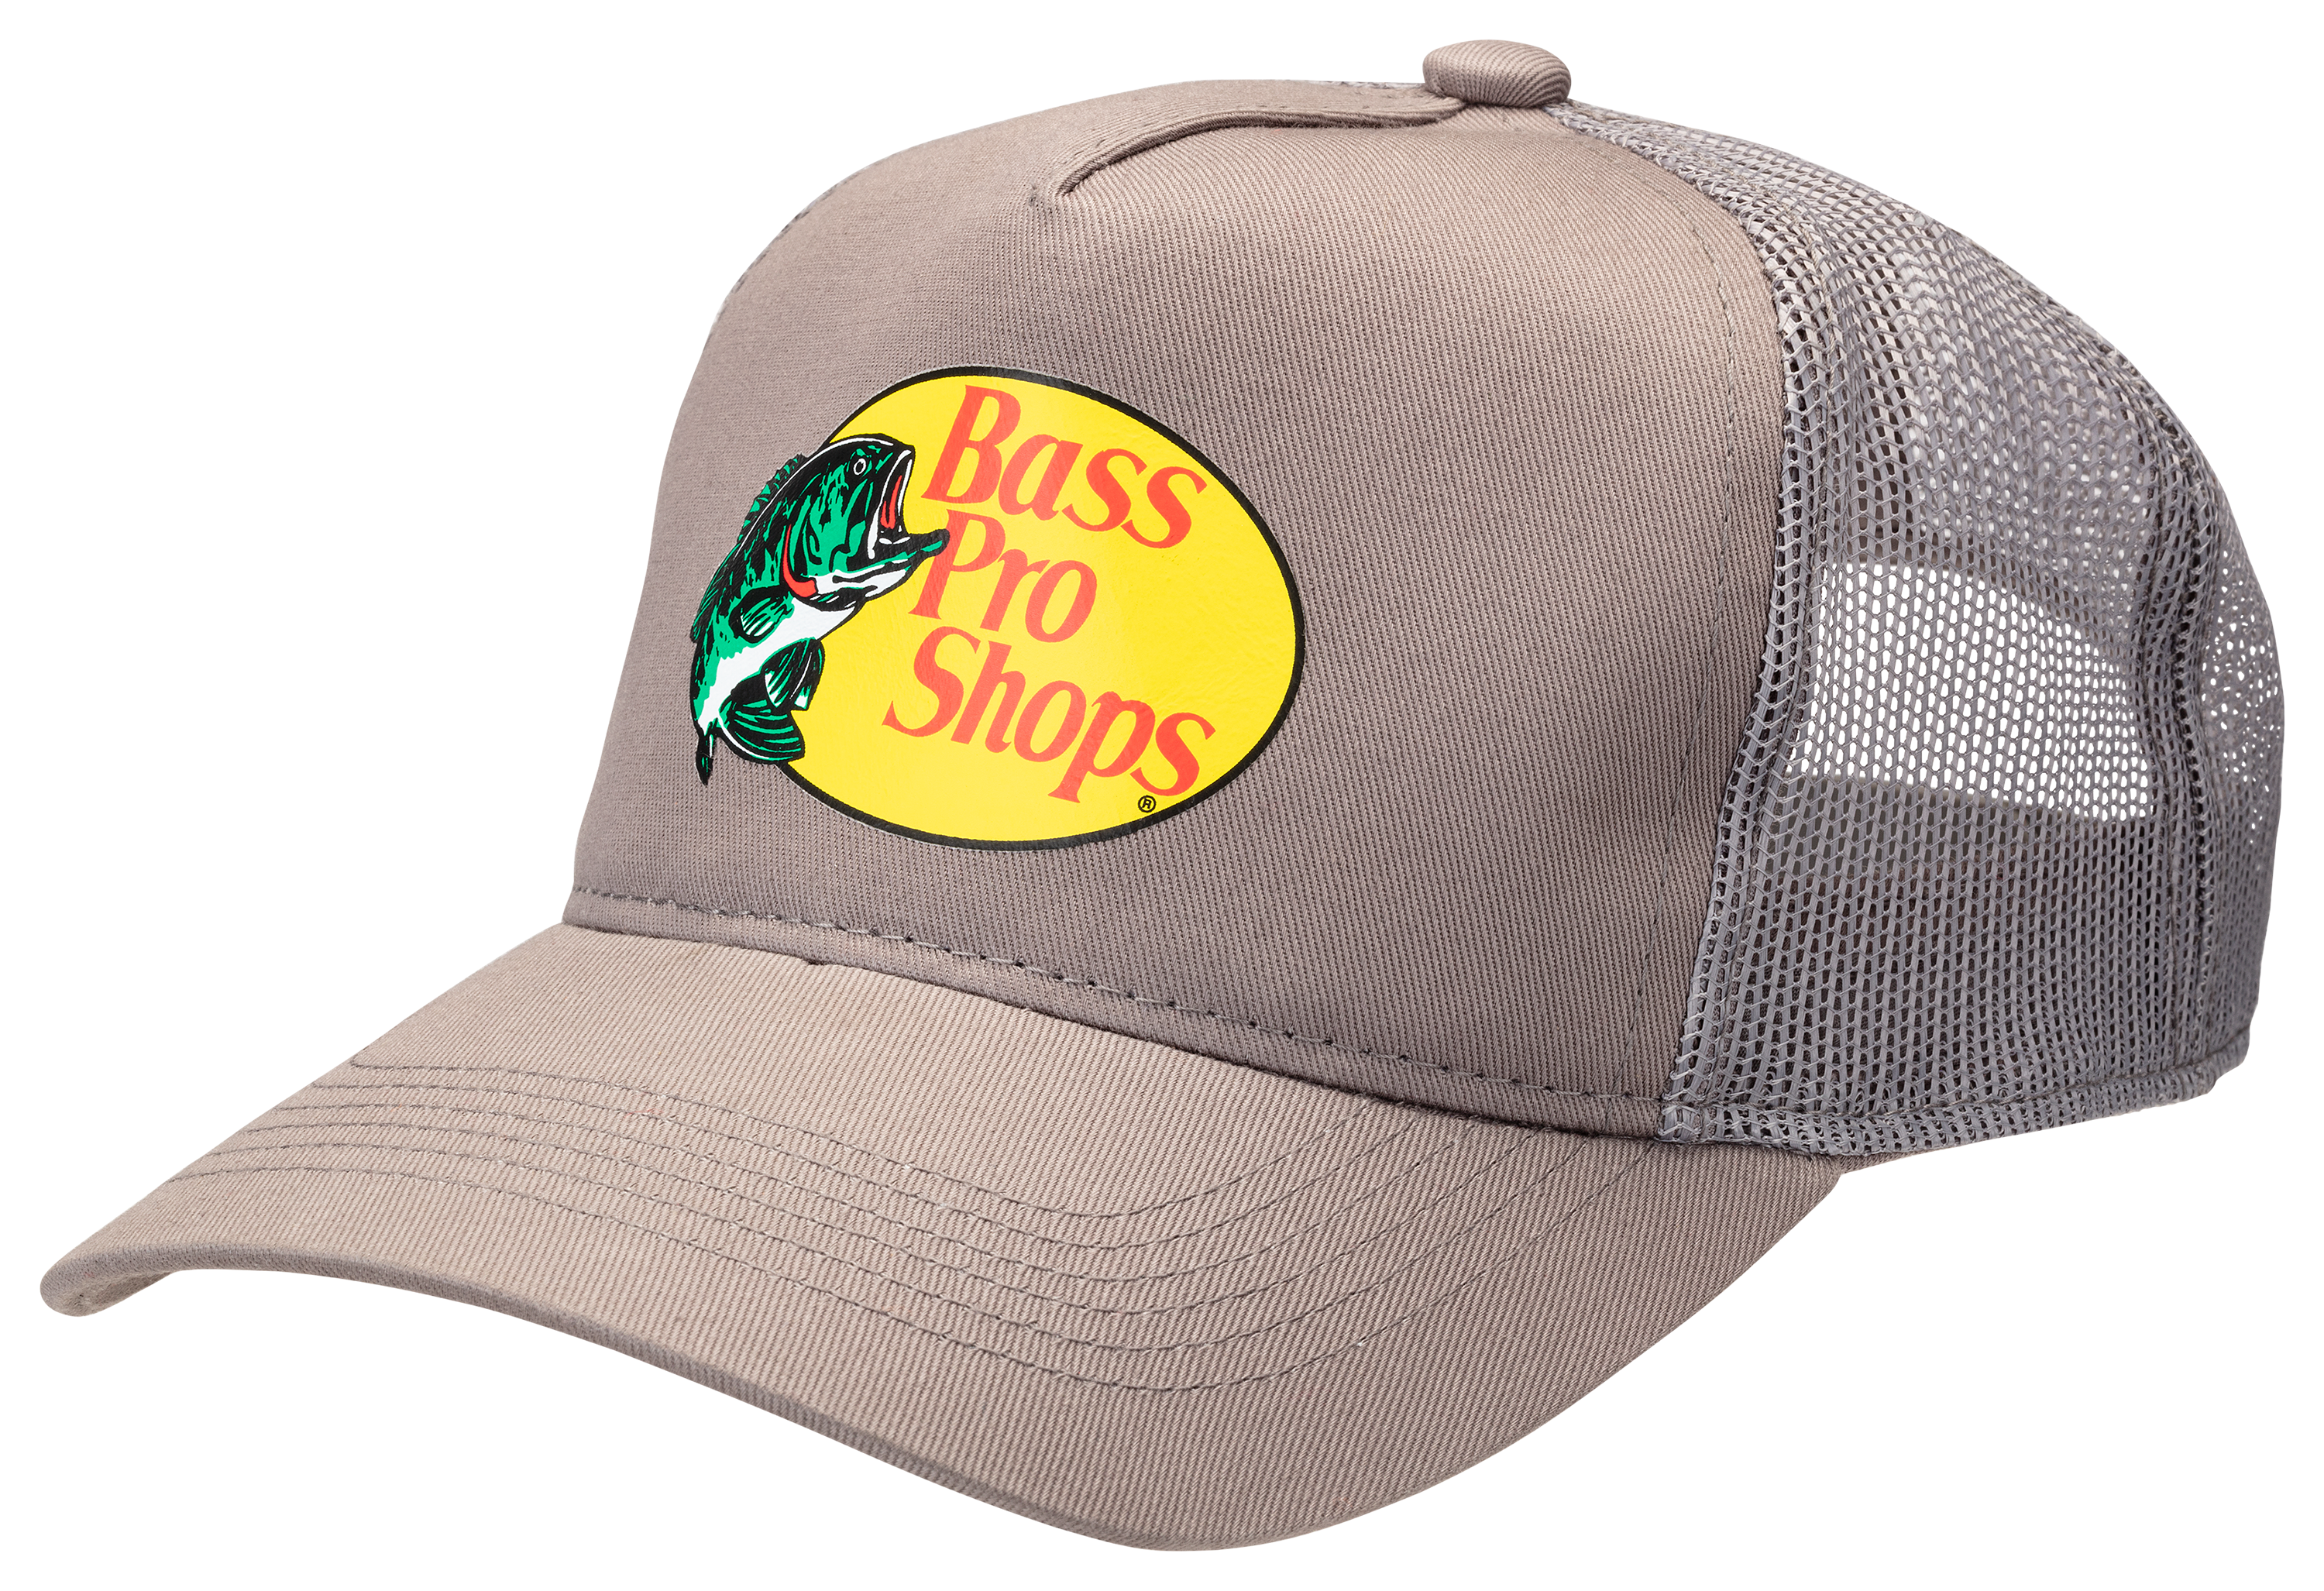 Bass Pro Shops Outdoor Hat Mesh Cap Fishing SnapBack khaki Tan Brown Logo